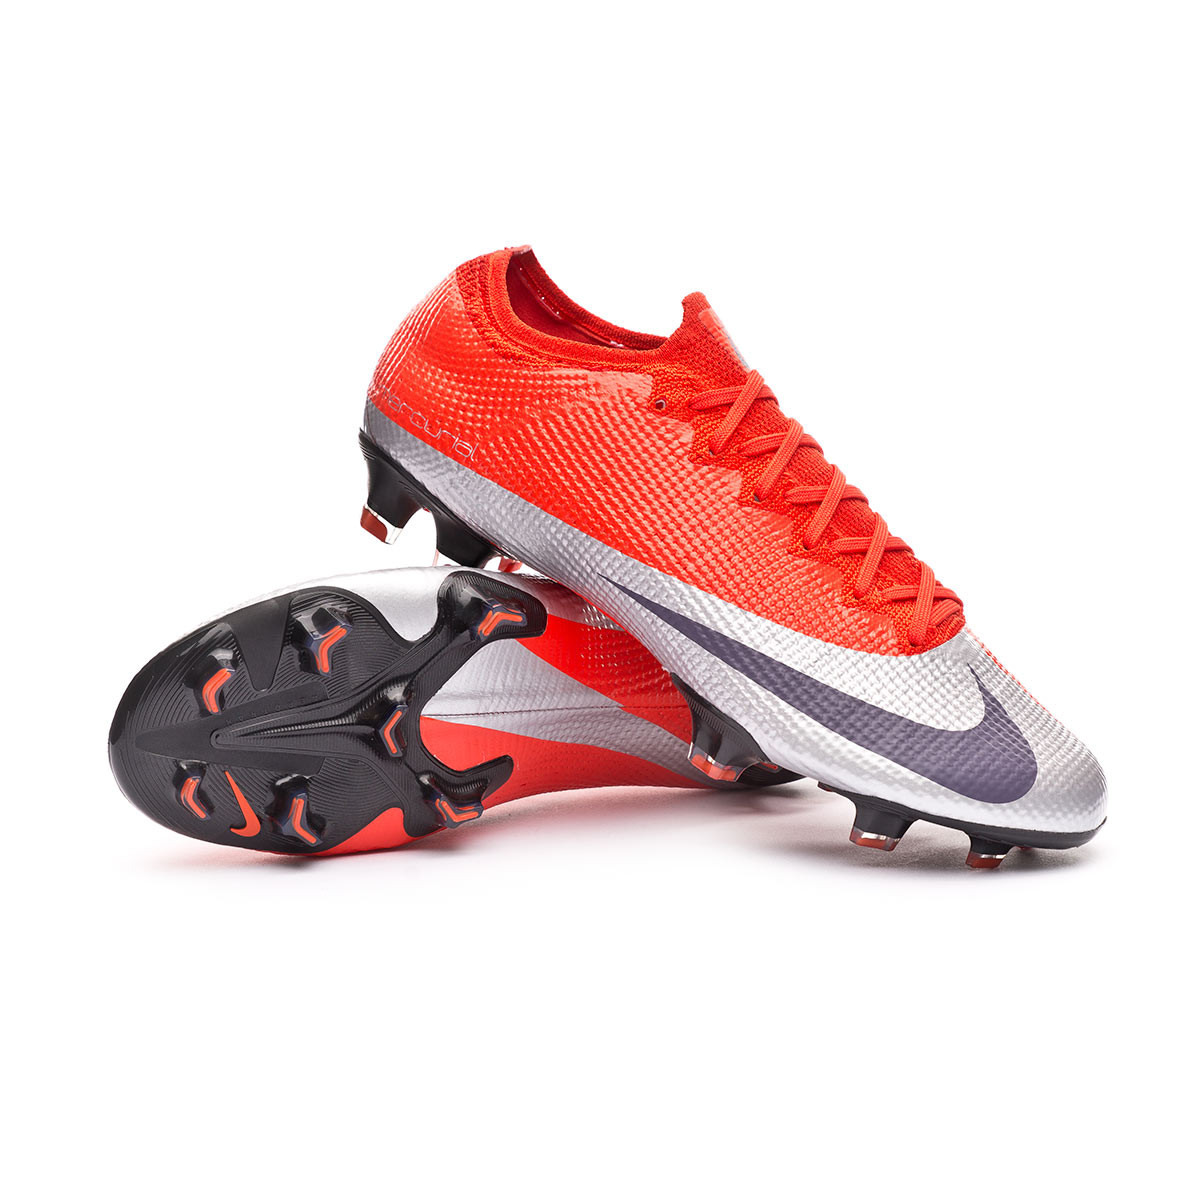 Bota de fútbol Nike Mercurial Vapor XIII Elite FG Max orange-Metallic  silver-Black - Tienda de fútbol Fútbol Emotion